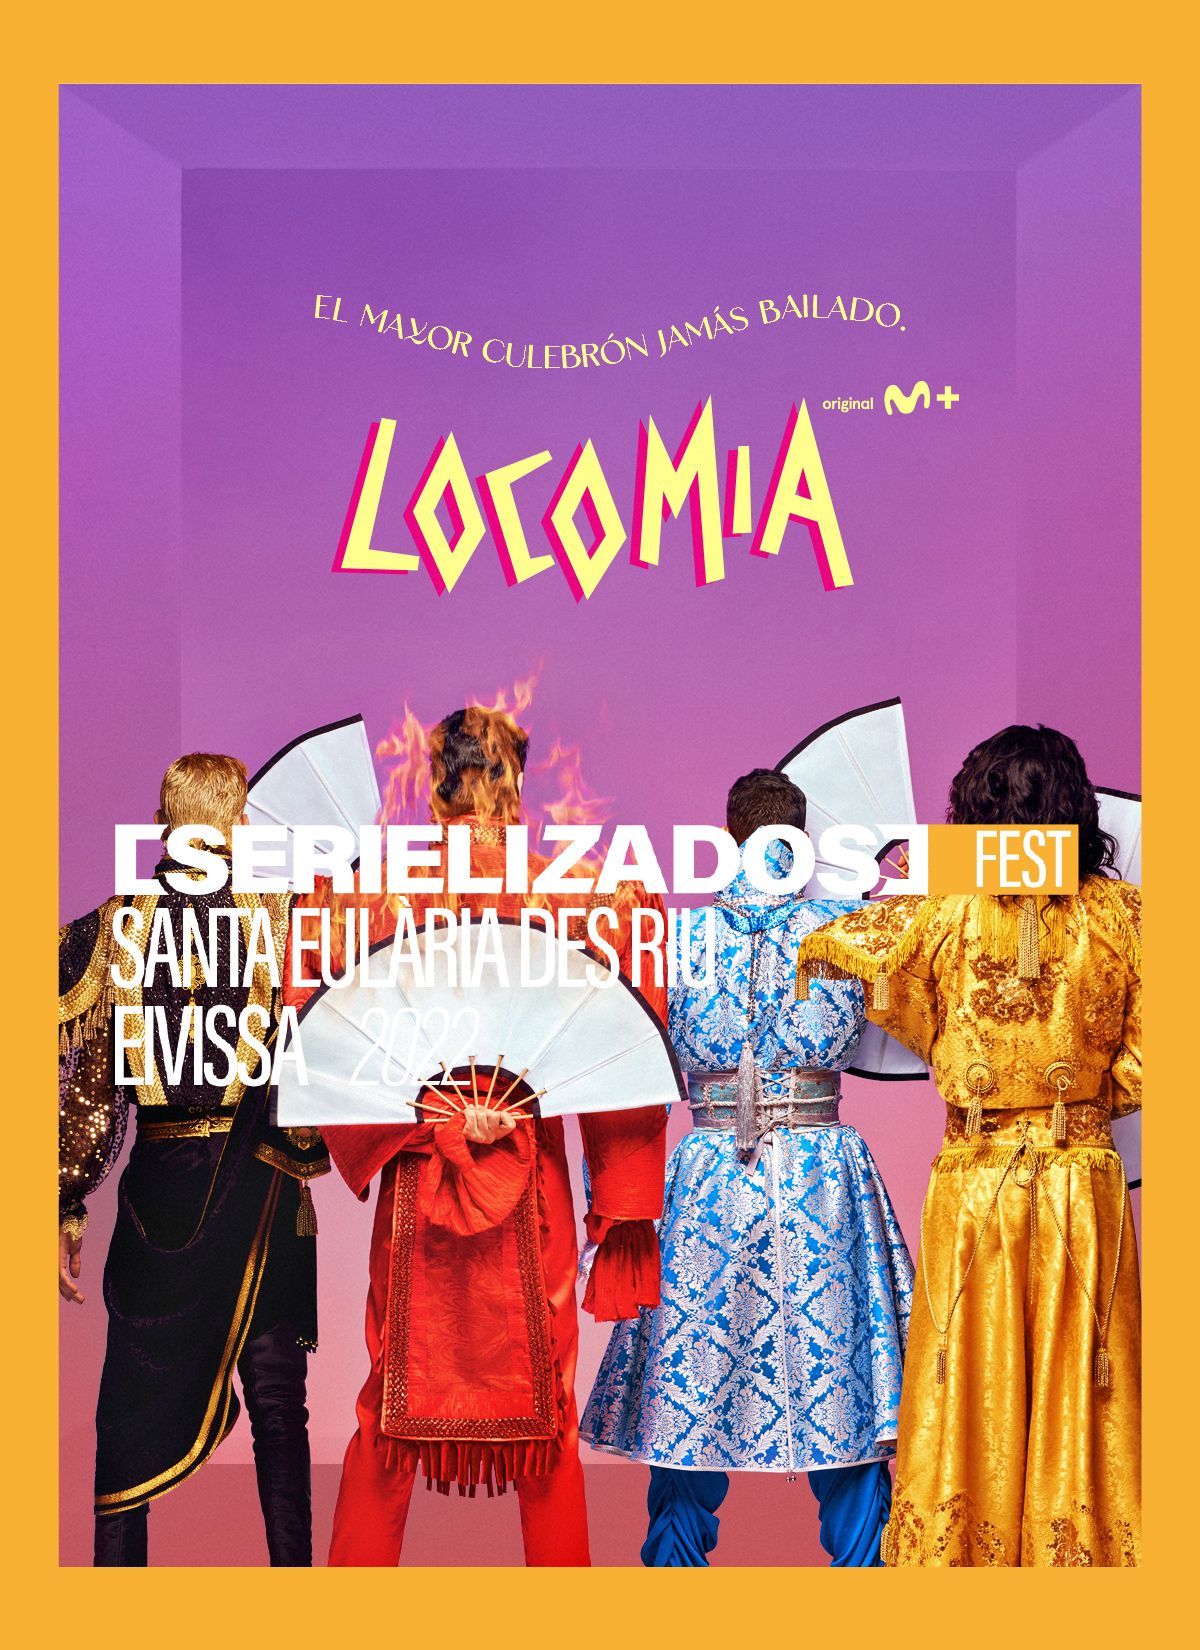 L’estrena mundial de la sèrie ‘Locomía’ (Movistar+) inaugura el Serielizados Fest Santa Eulària des Riu